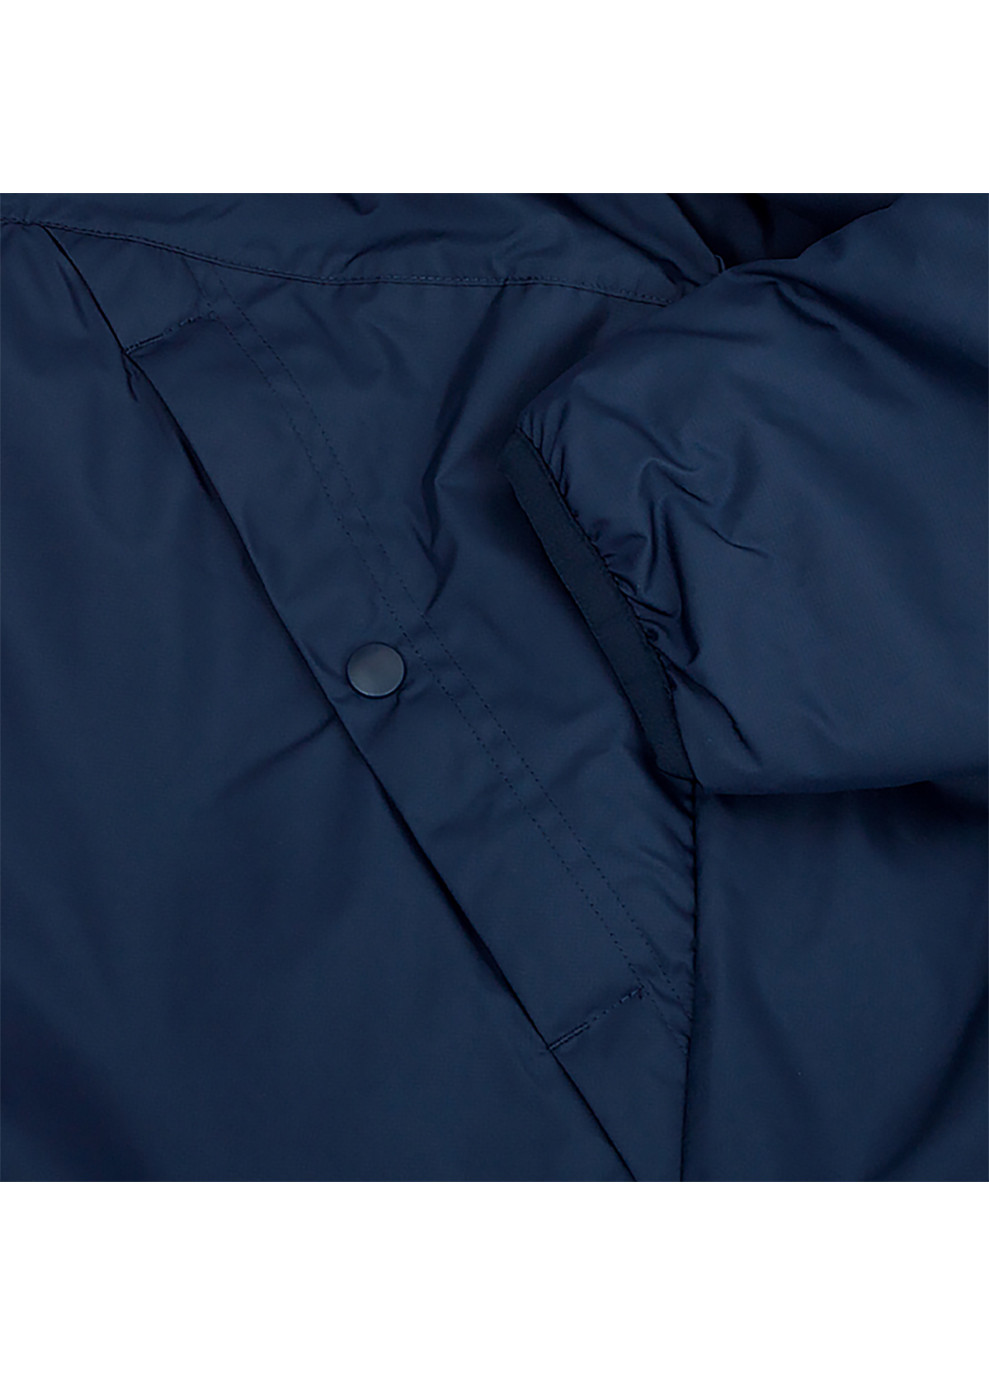 Синя демісезонна чоловіча куртка m nk syn fl rpl park20 sdf jkt синій Nike